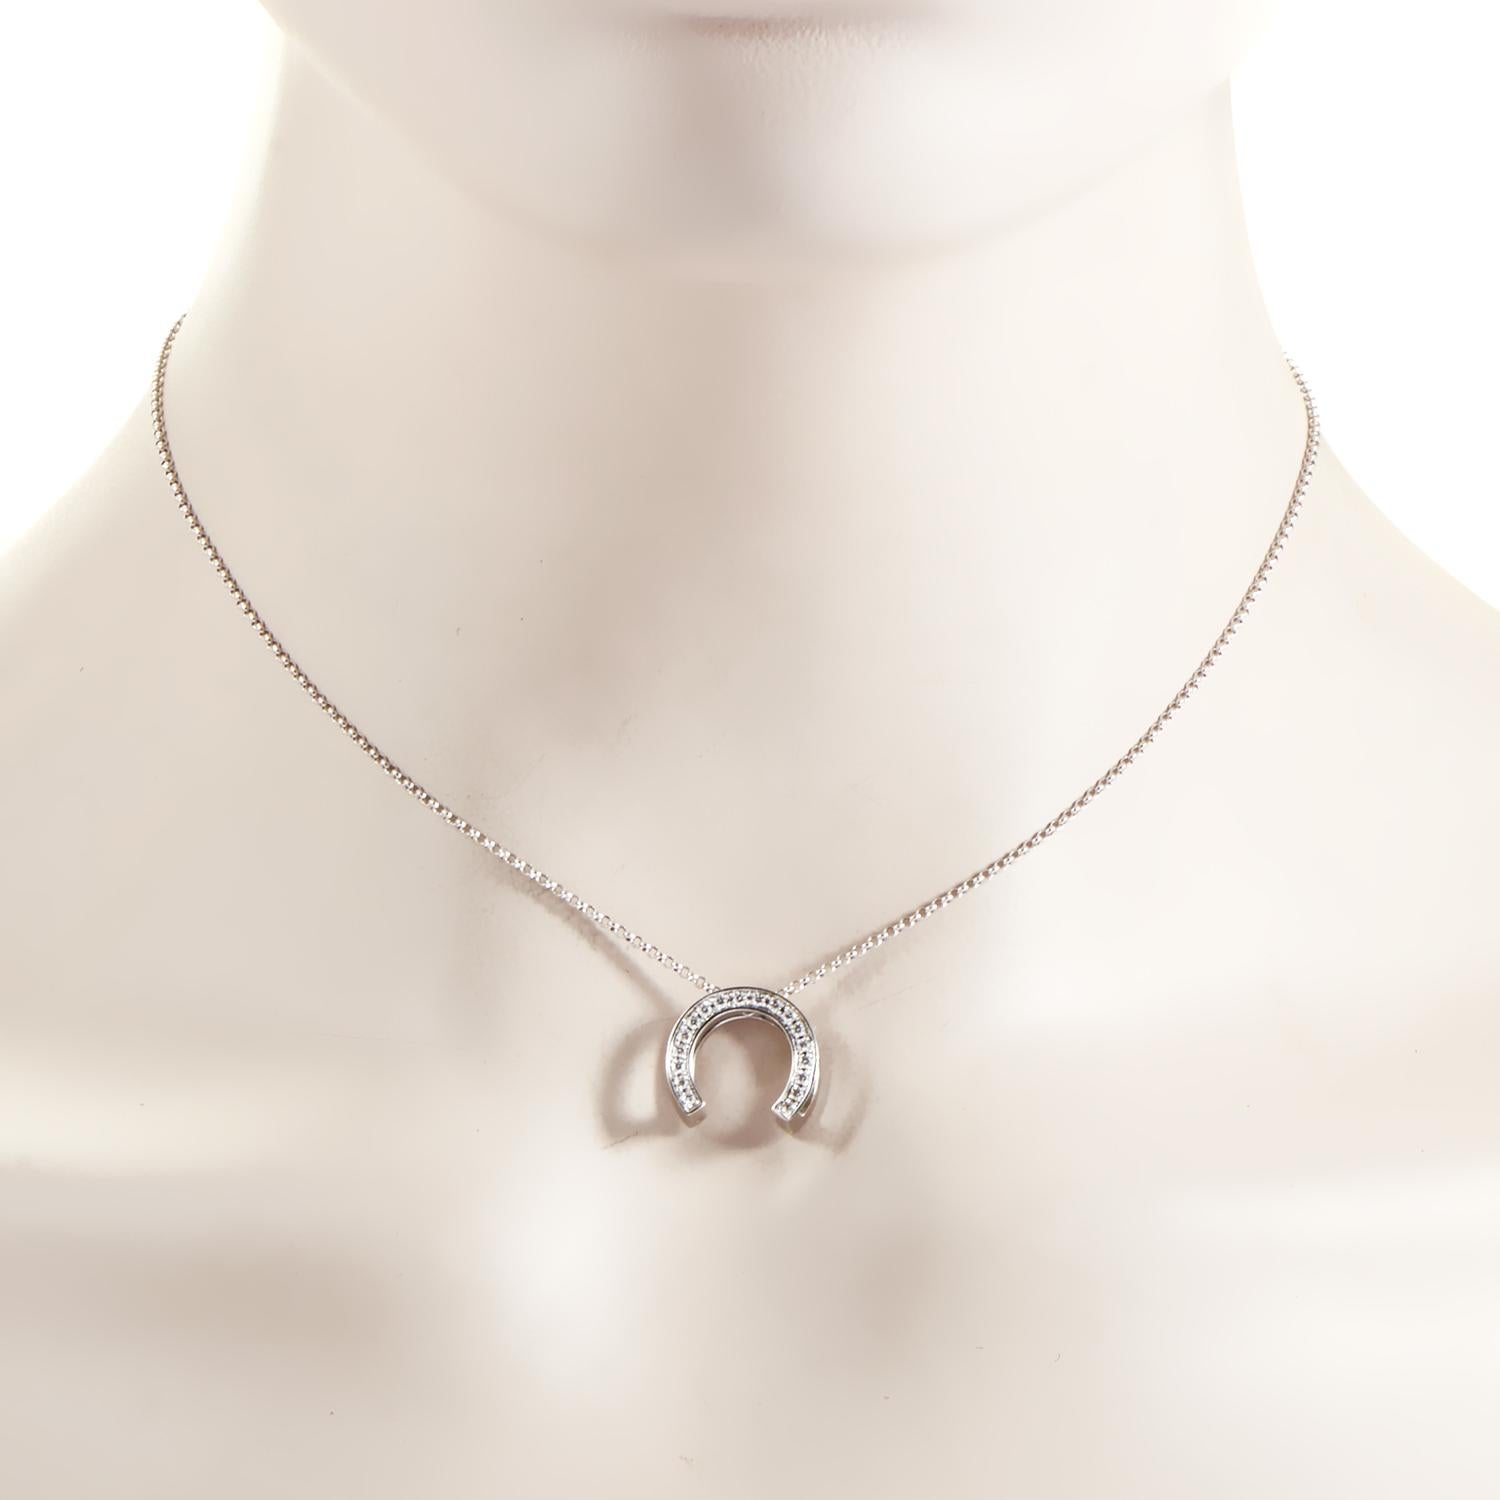 horseshoe pendant necklace white gold